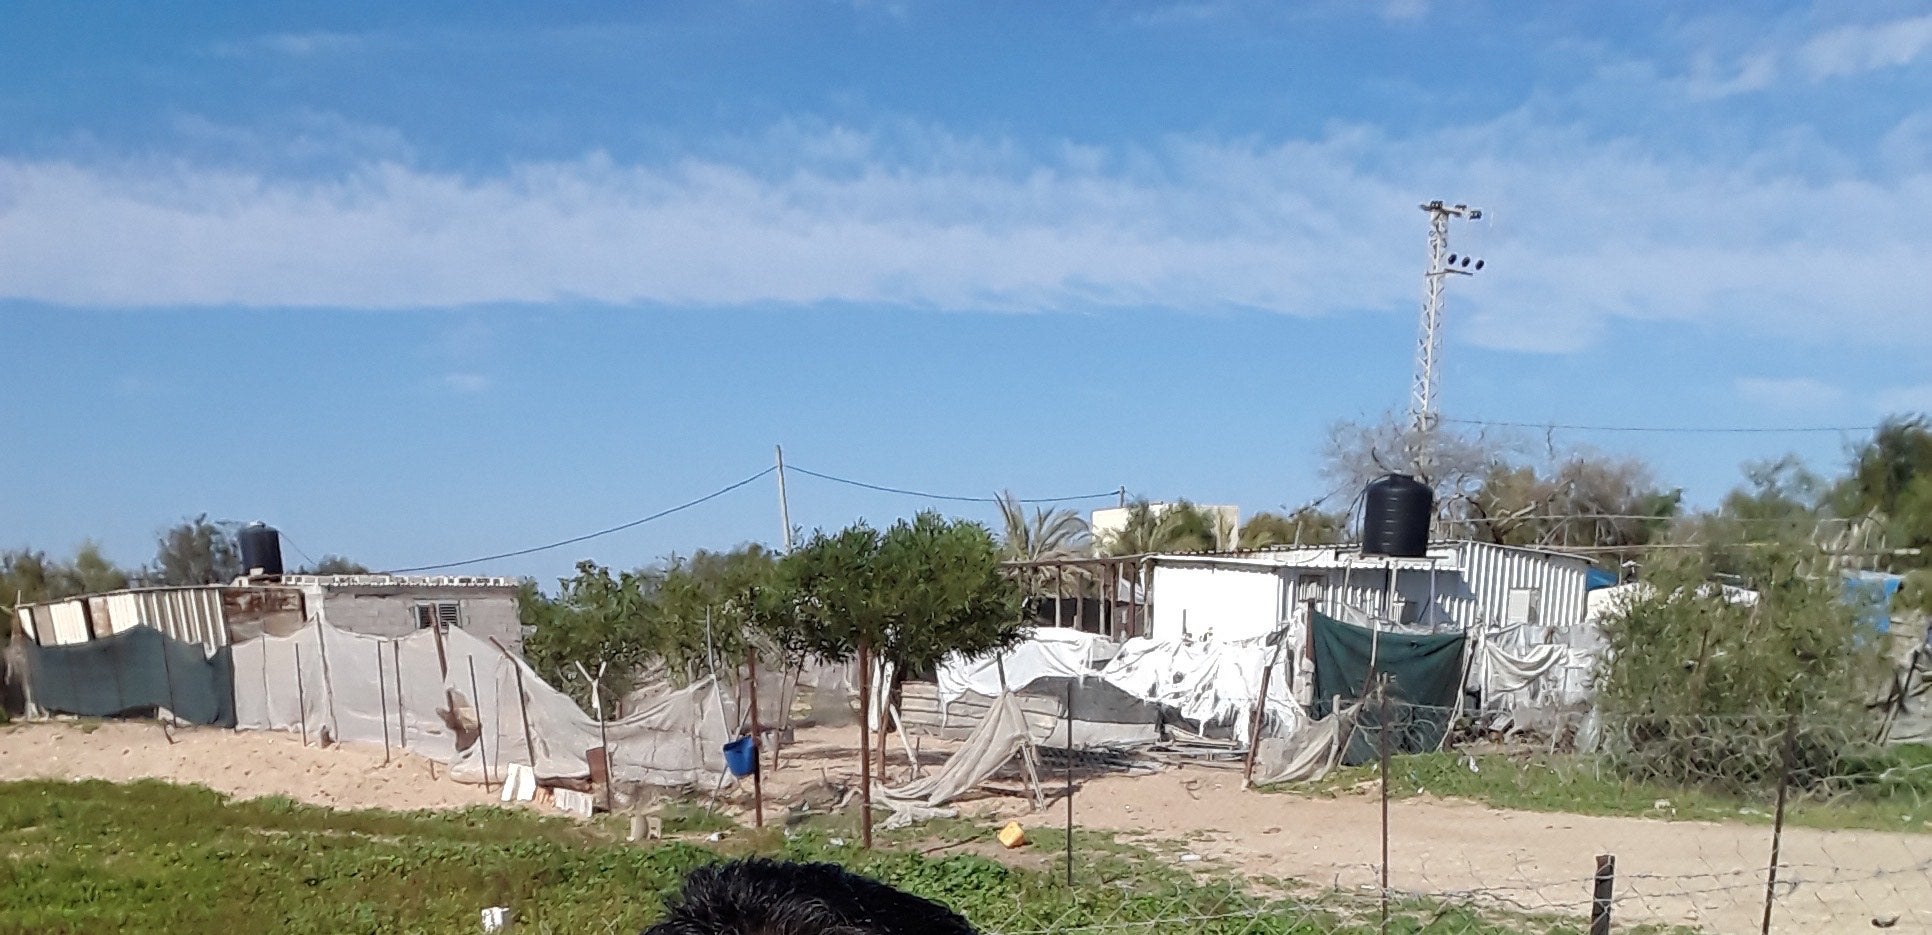 صورة لمنزلَيْ رسمي ومحمد السواركة في دير البلح في يناير/كانون الثاني 2019، واللذين دمرتهما غارة إسرائيلية في 14 نوفمبر/تشرين الثاني 2019 وقتلت تسعة أفراد من العائلة، منهم خمسة أطفال.